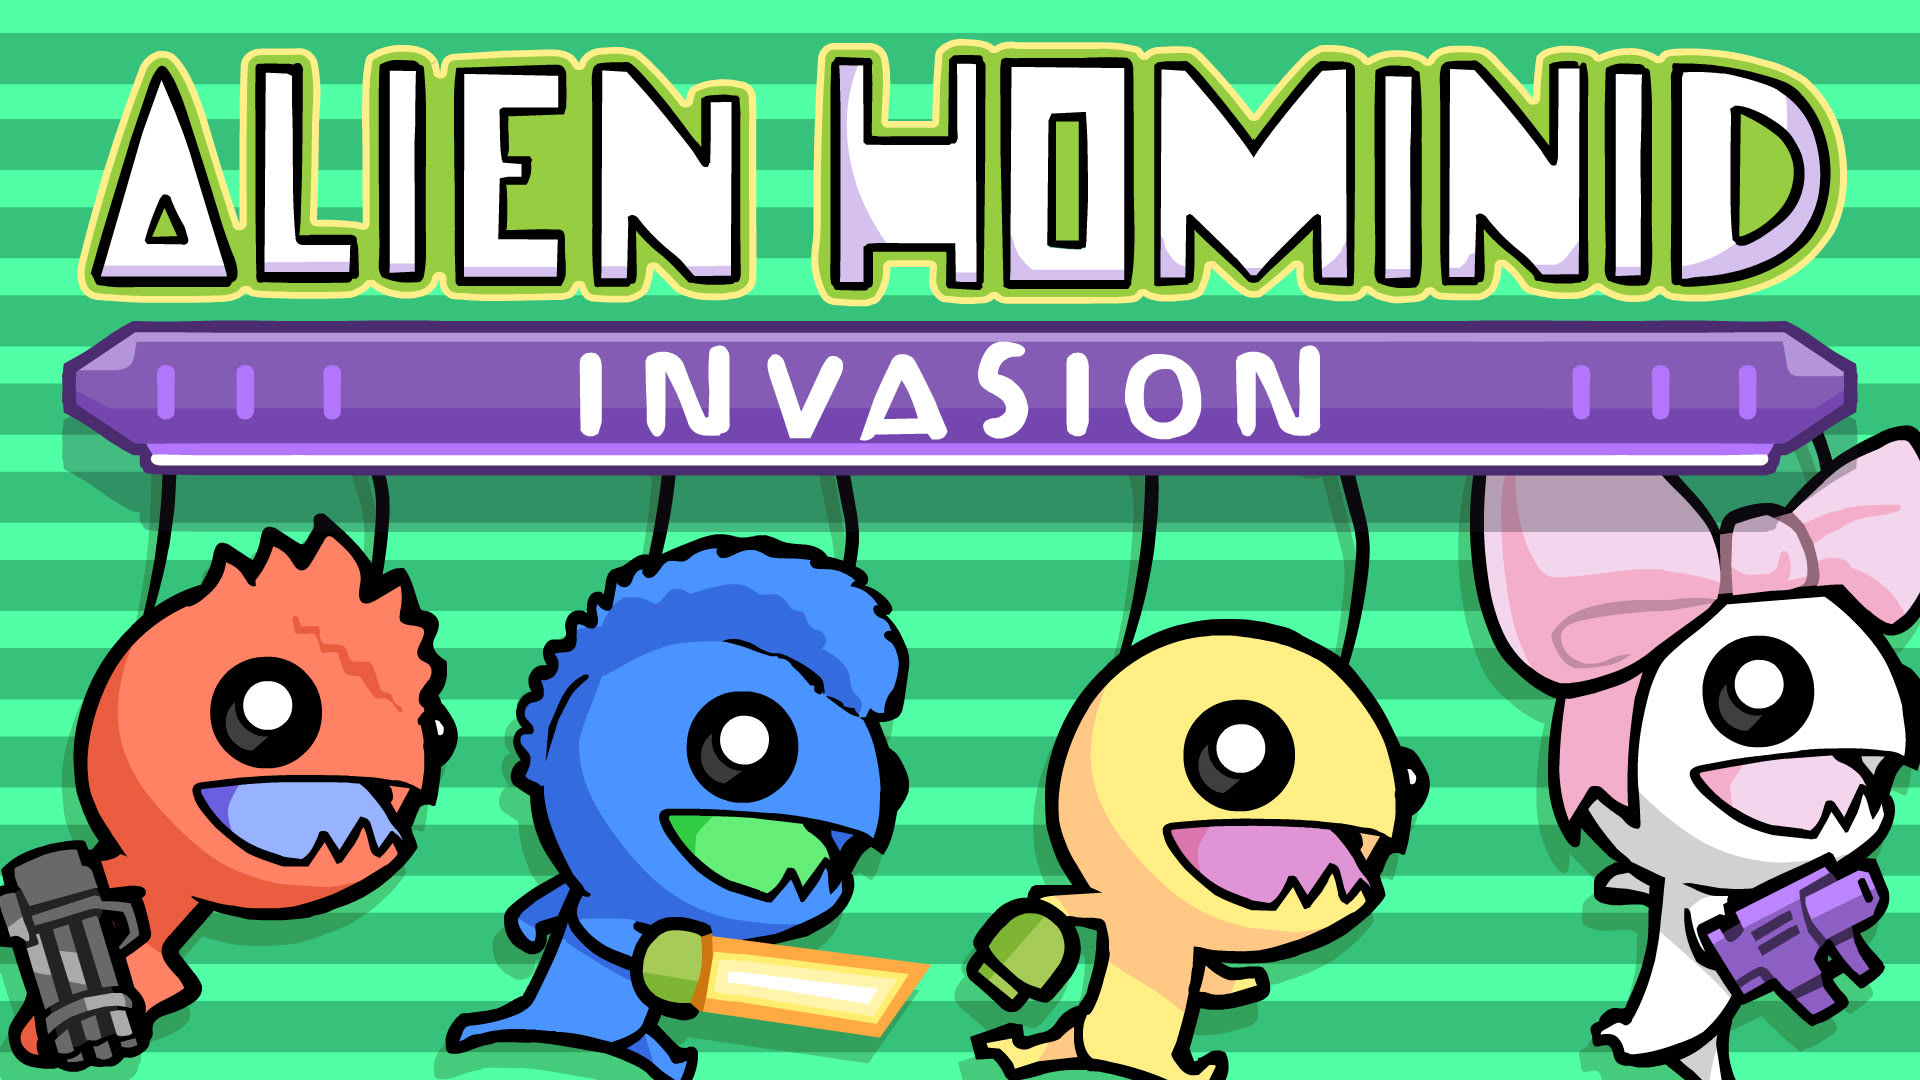 Alien Hominid Invasion 1